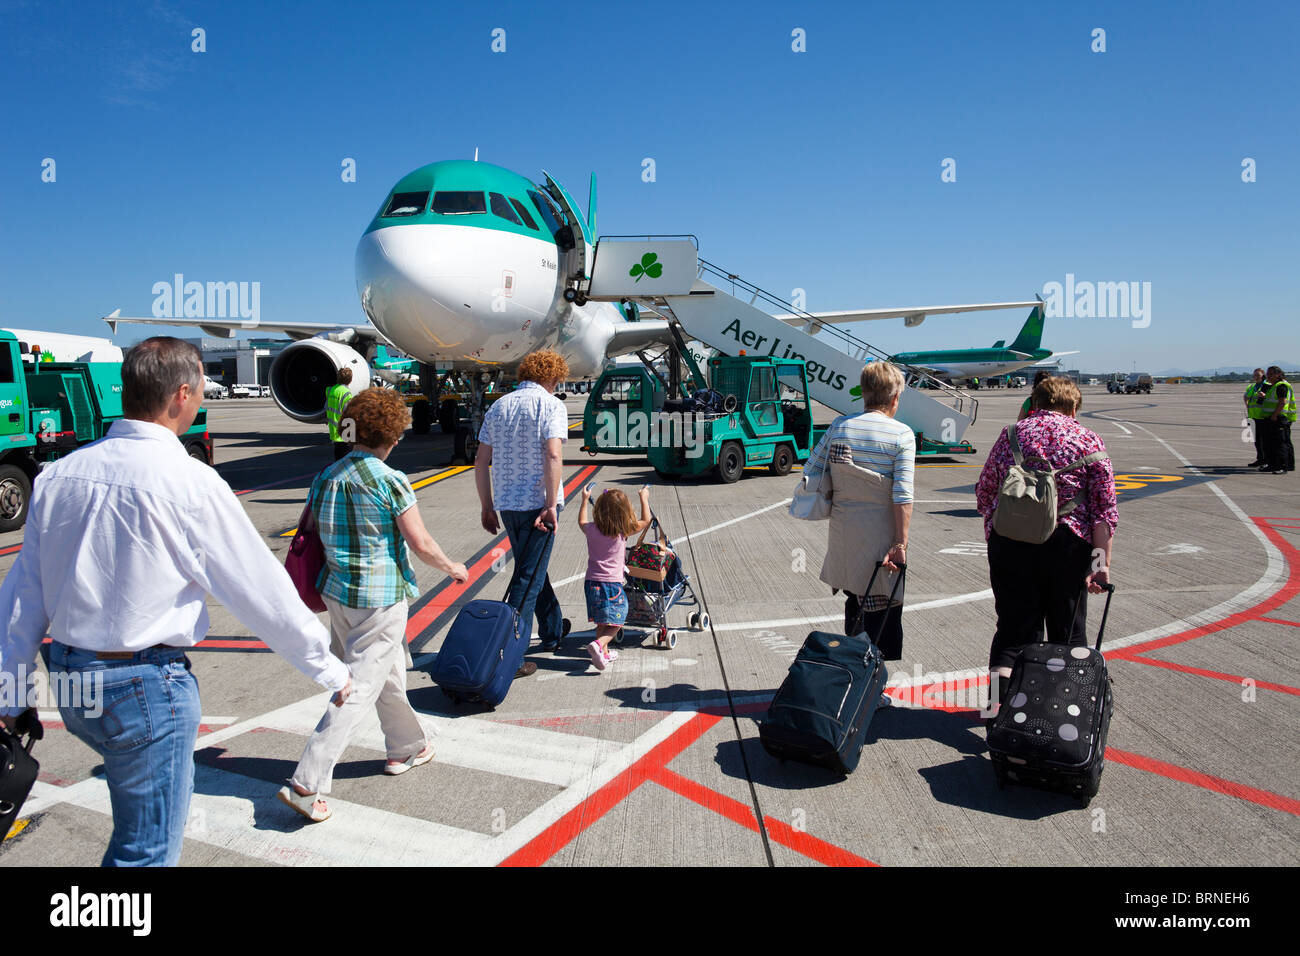 Les passagers d'Aer Lingus par RyanAir, vol de l'aéroport de Dublin, Irlande Banque D'Images